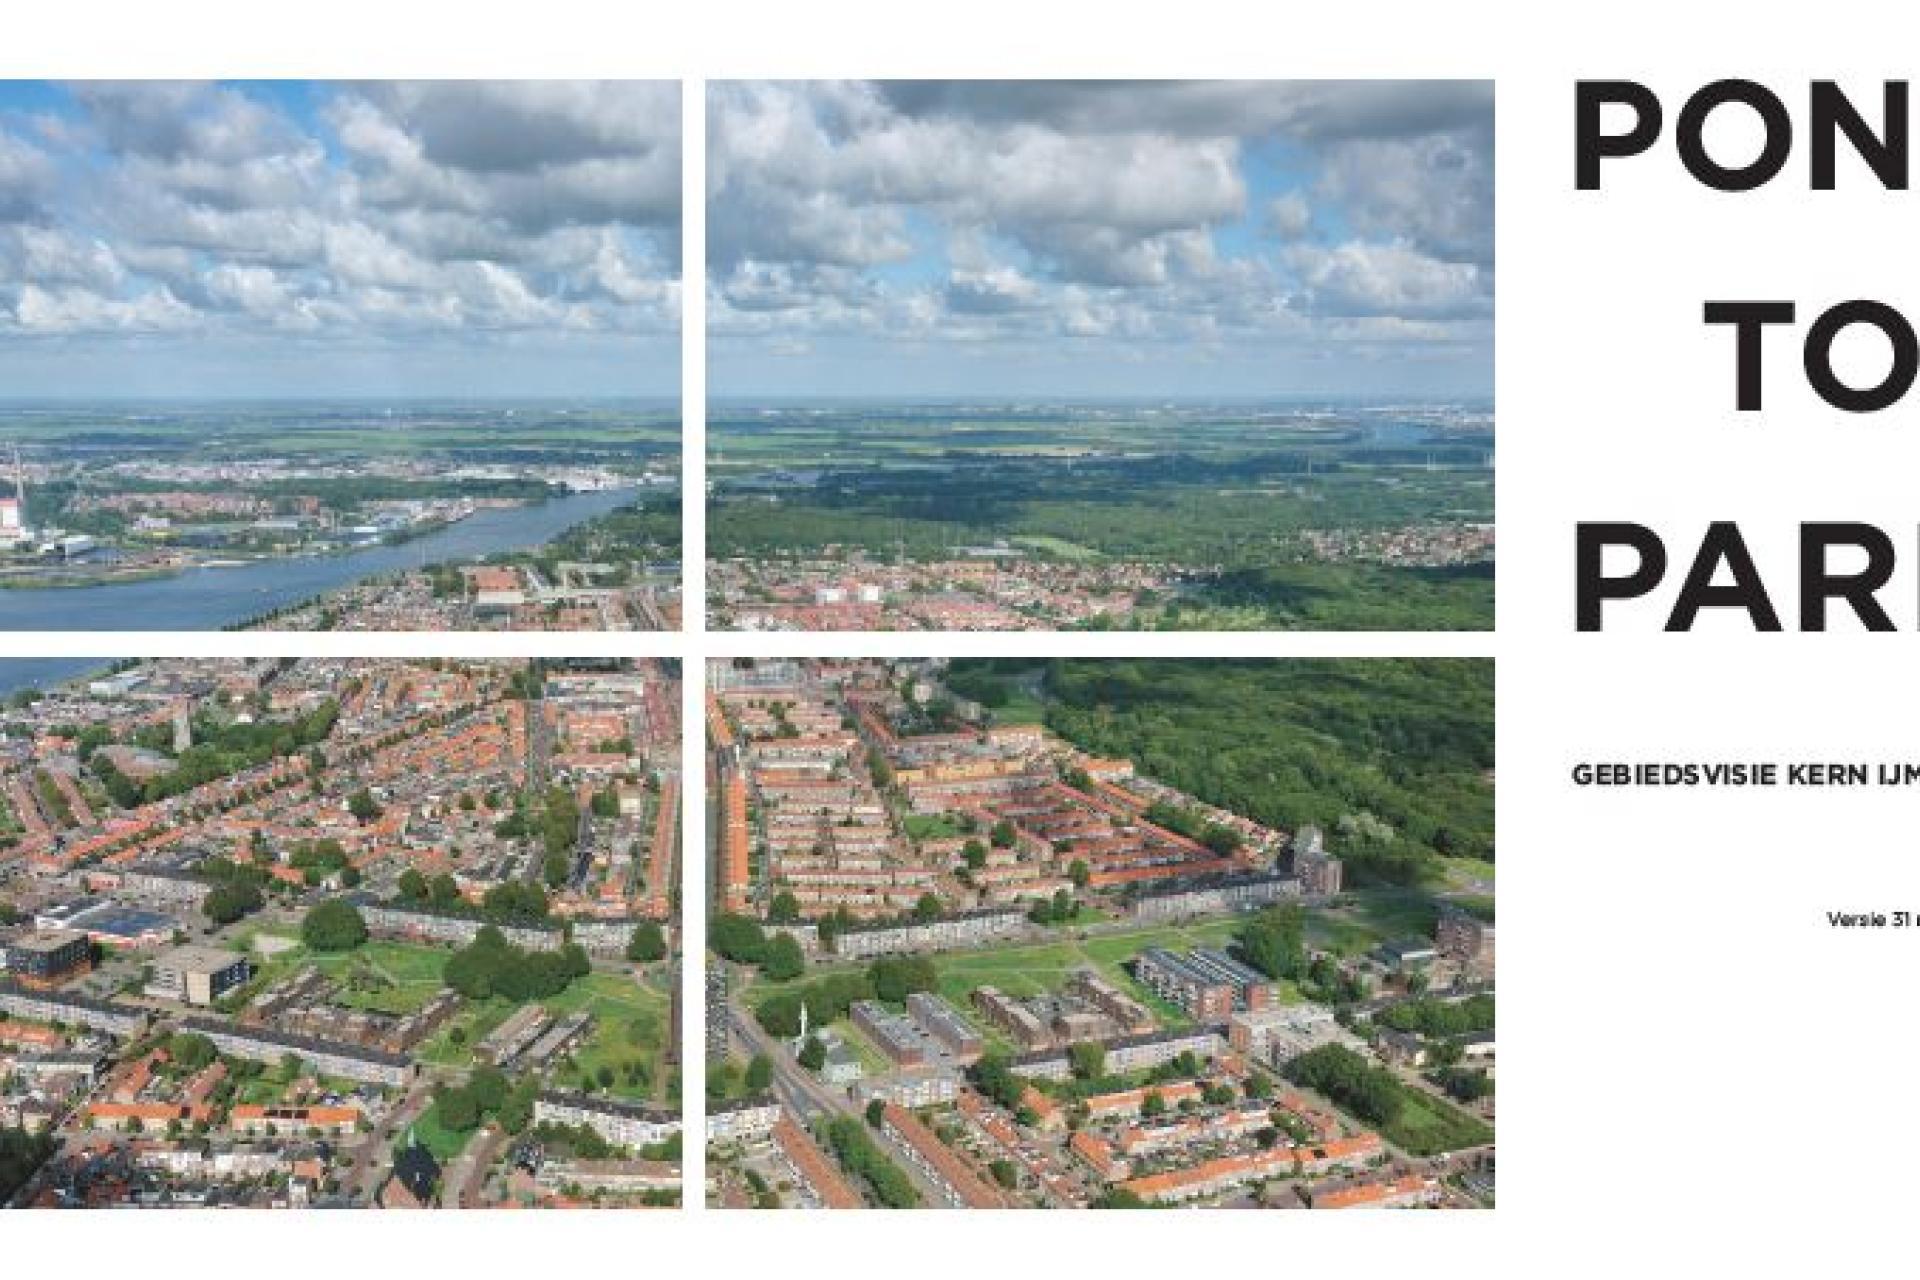 afbeelding met luchtfoto IJmuiden en tekst van pont tot park